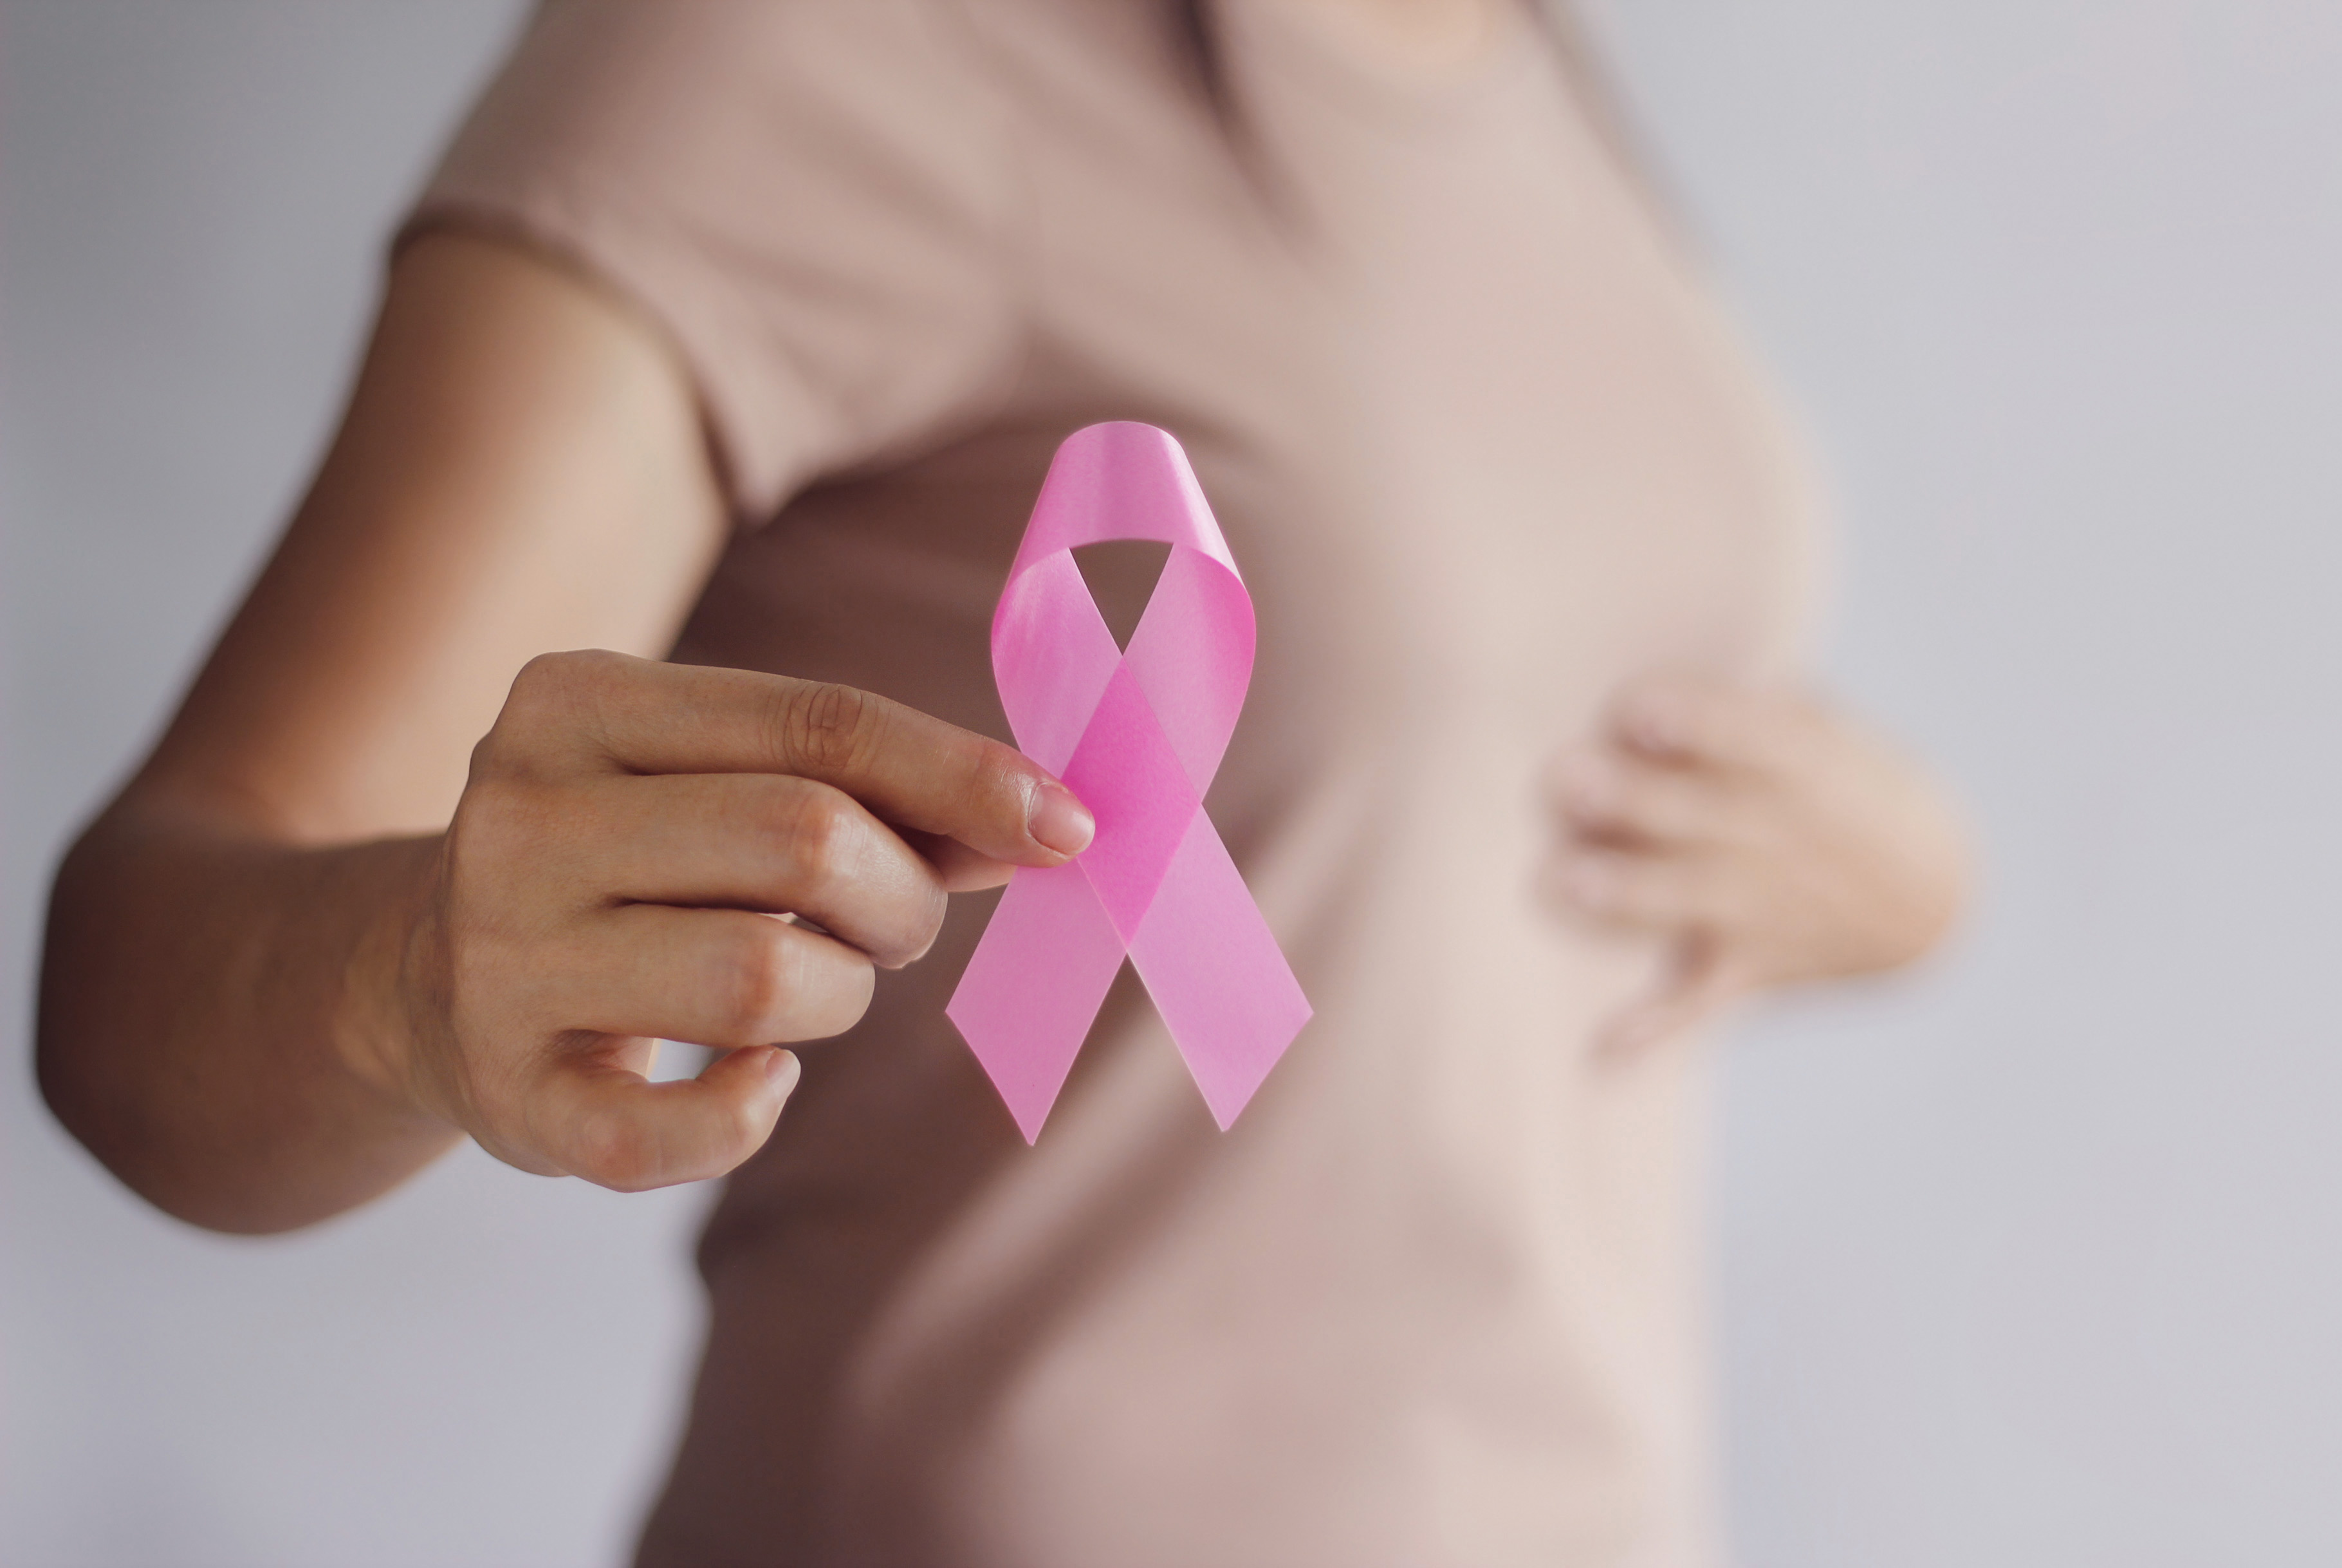 Krūties vėžys